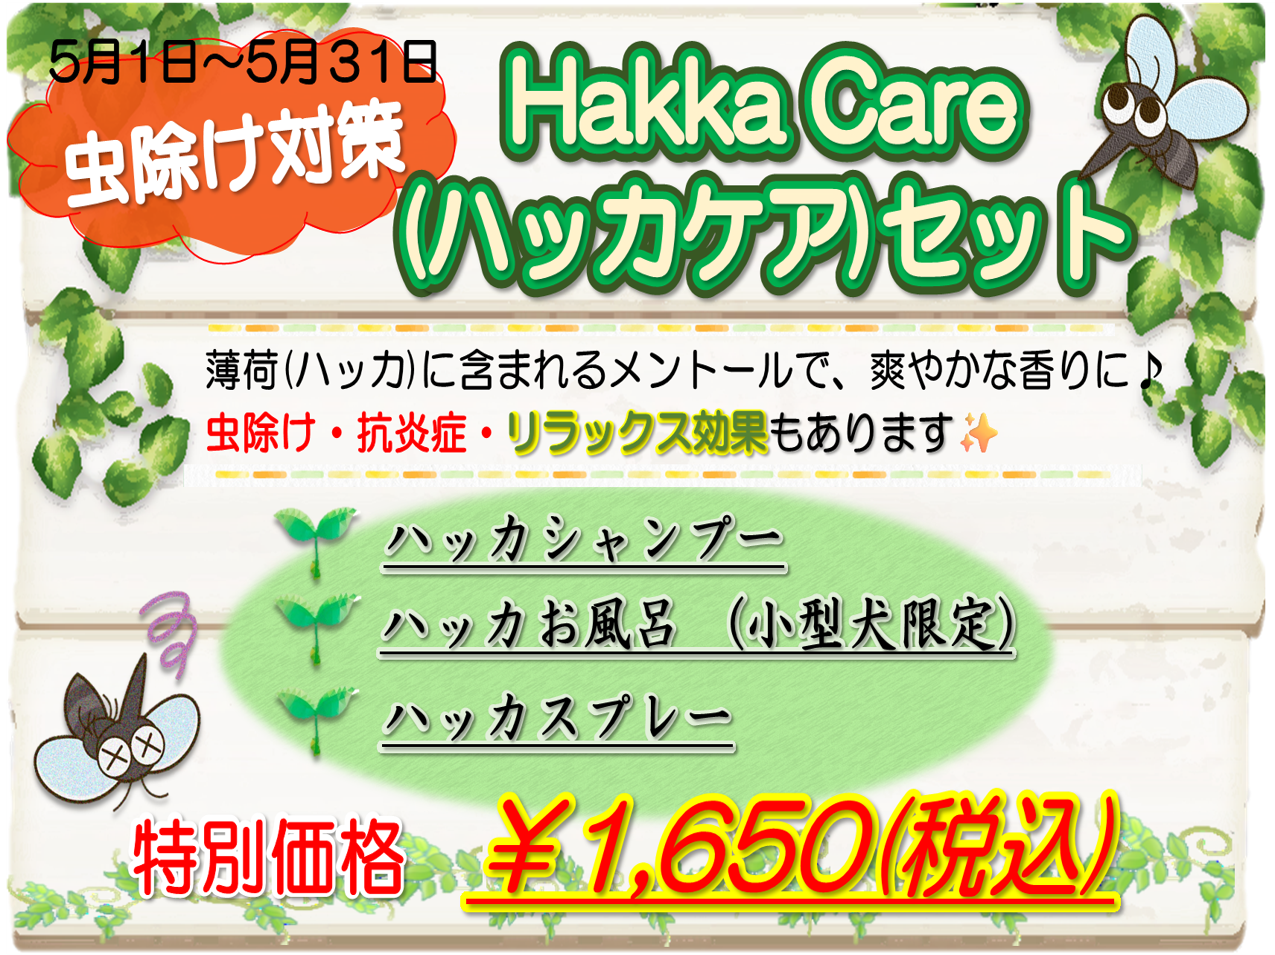 Hakka Care キャンペーン